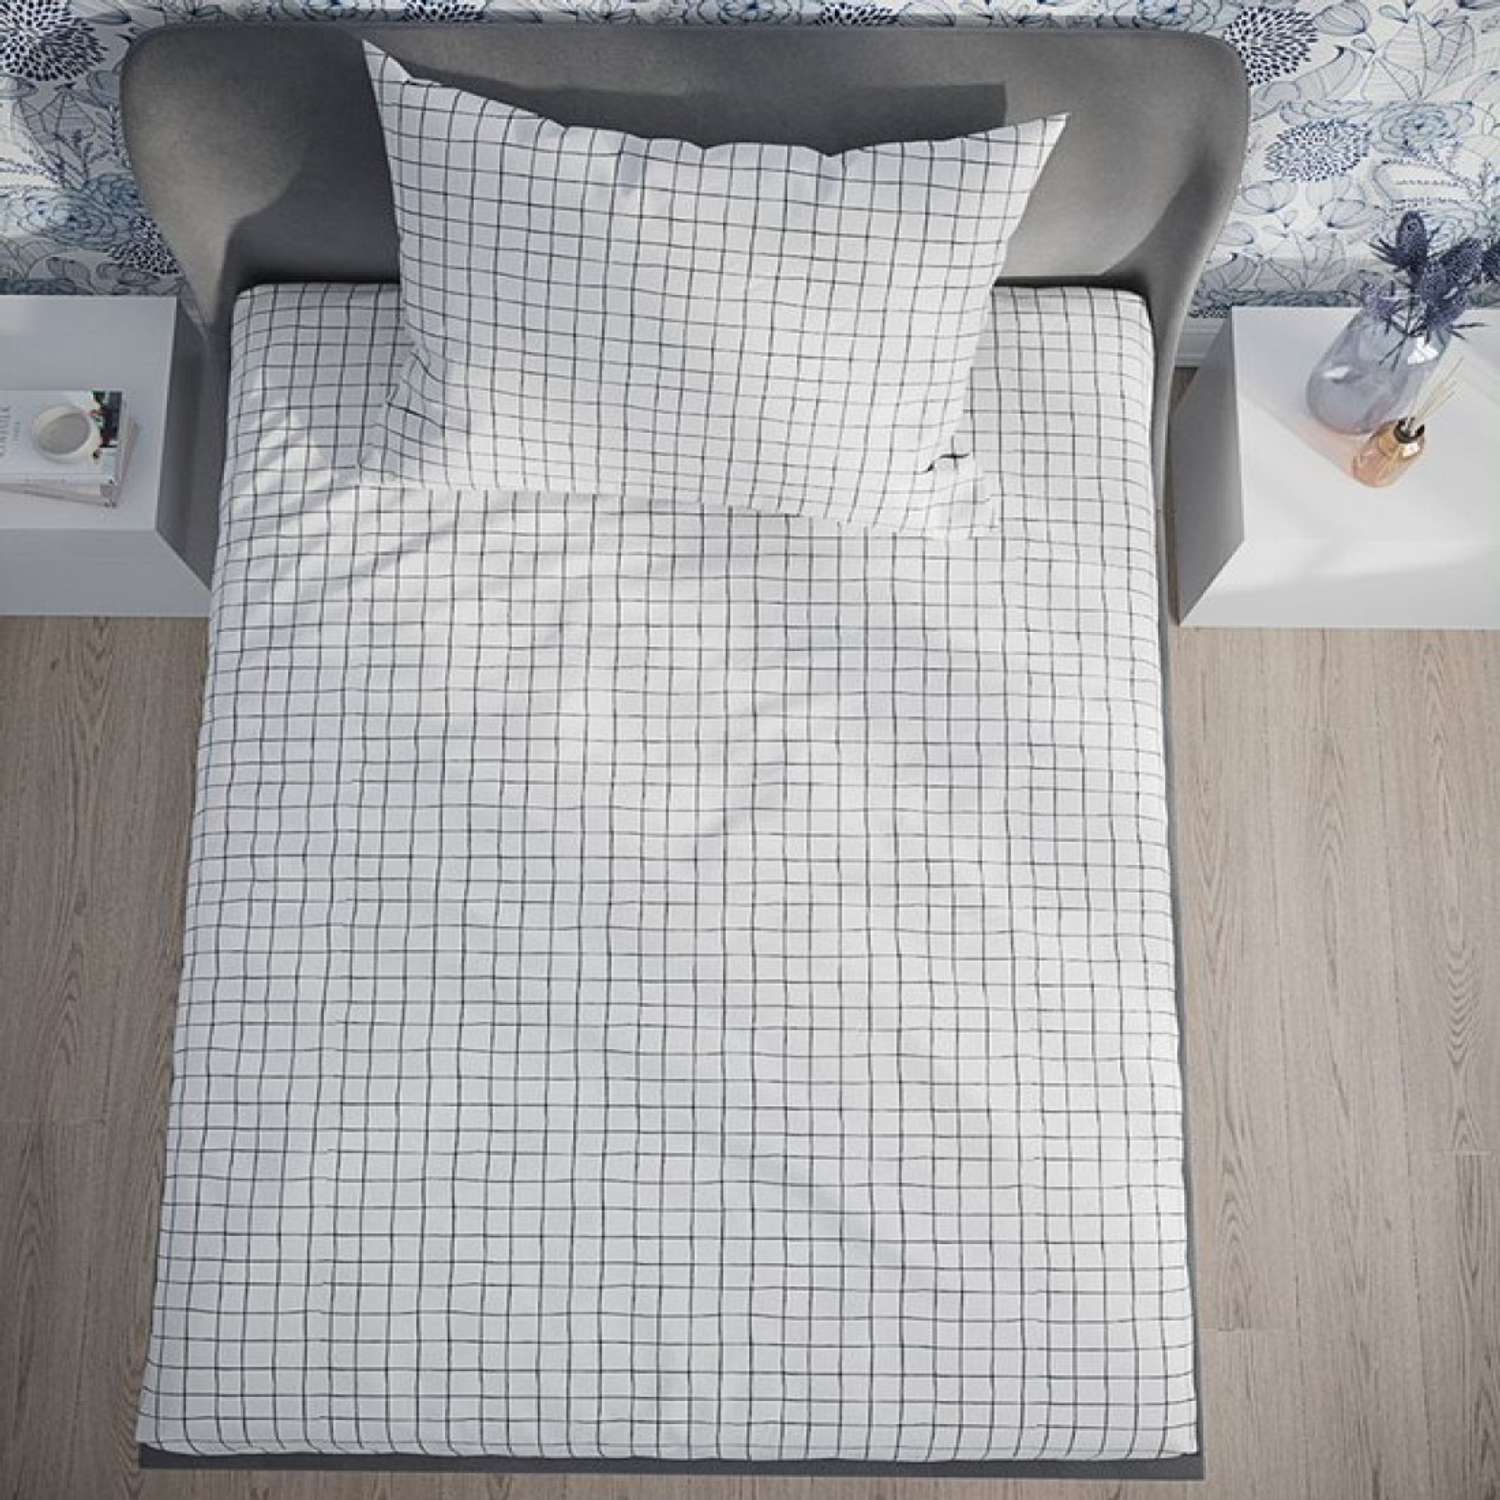 Комплект постельного белья Anna Maria Торино 1.5 спальный - фото 3